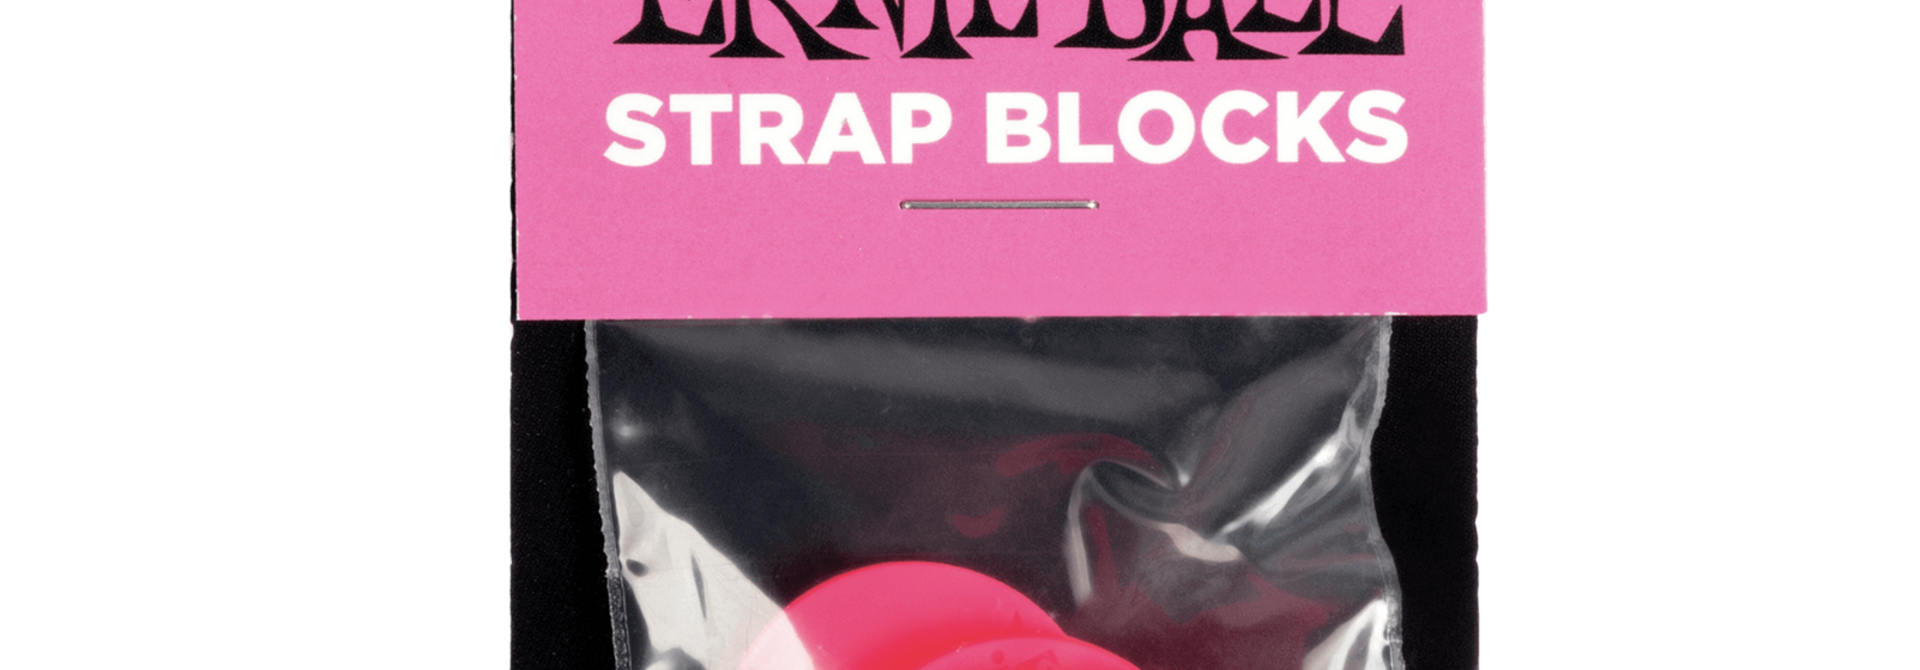 Ernie Ball Strap Blocks 4pk - Pink